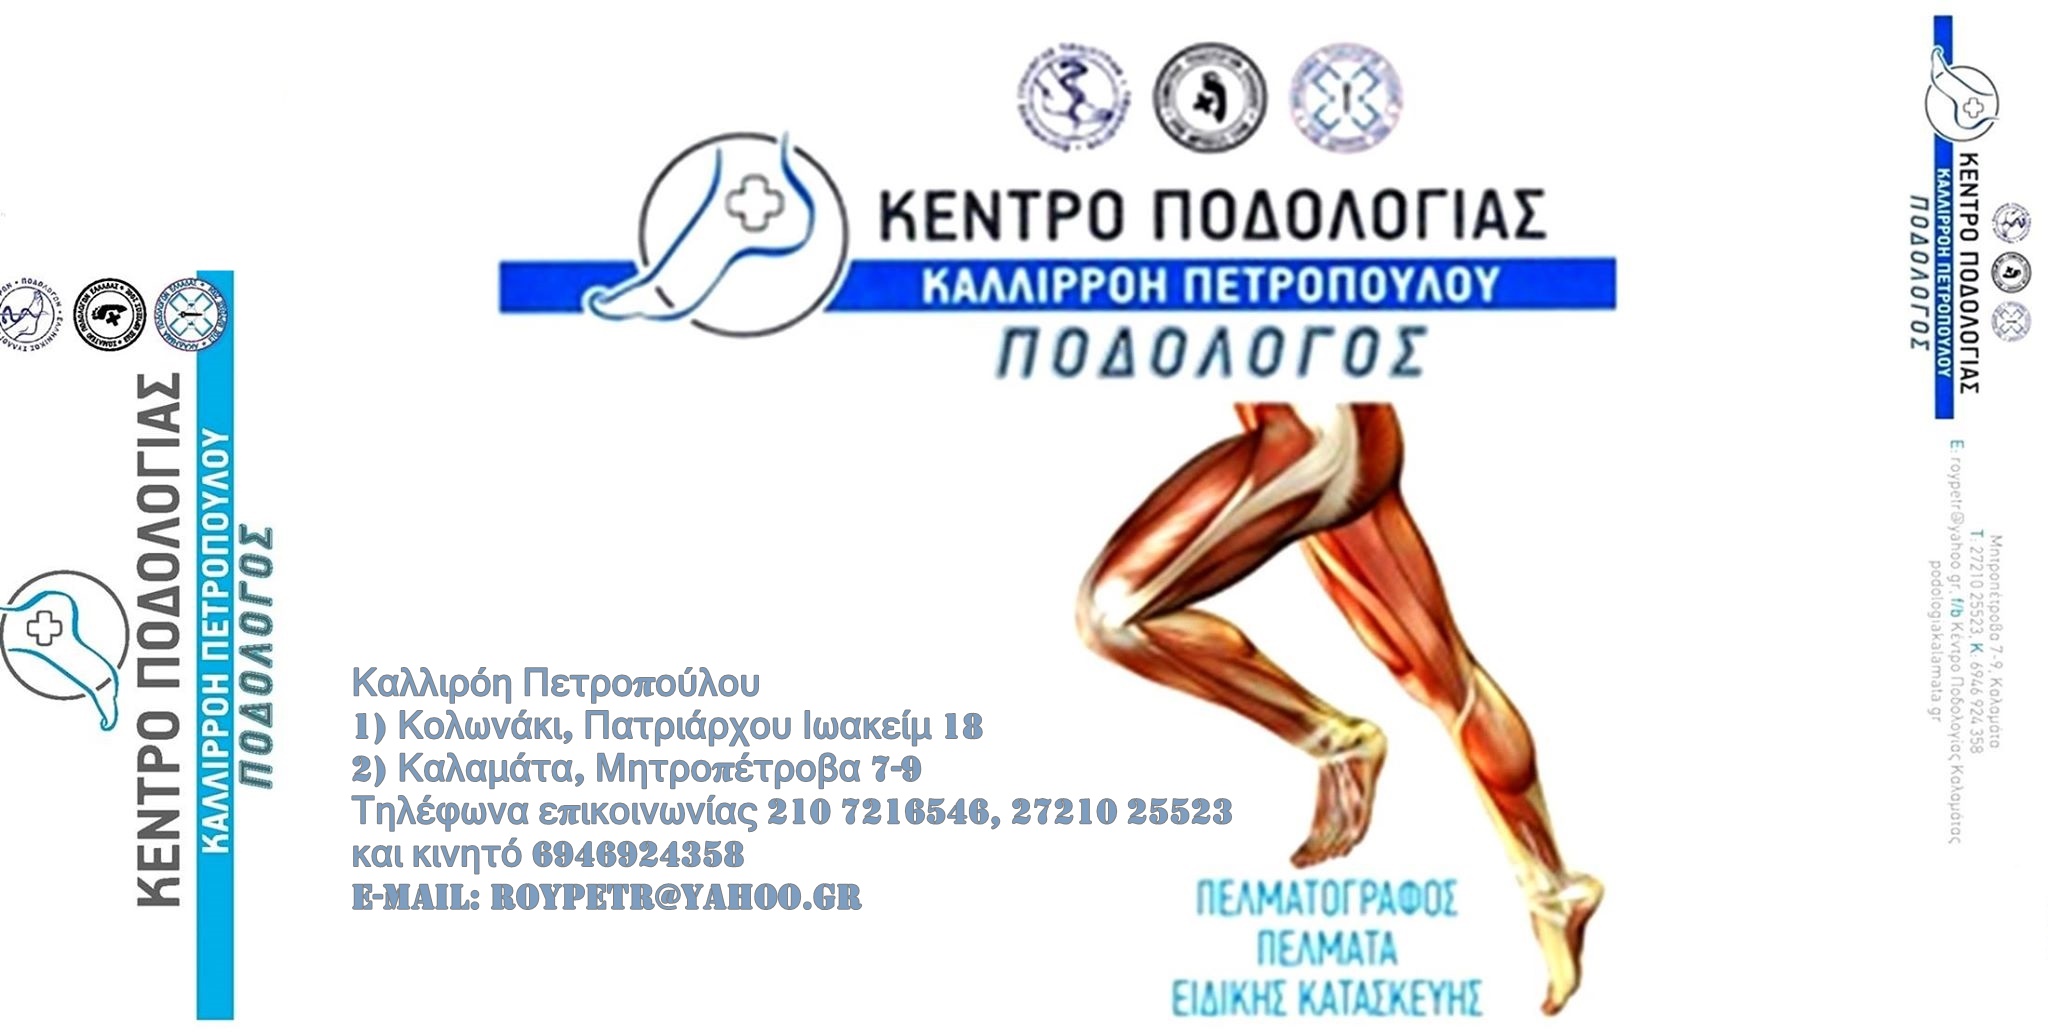 Το Κέντρο Ποδολογίας της Καλλιρόης Πετροπούλου τώρα και στην Αθήνα! 10